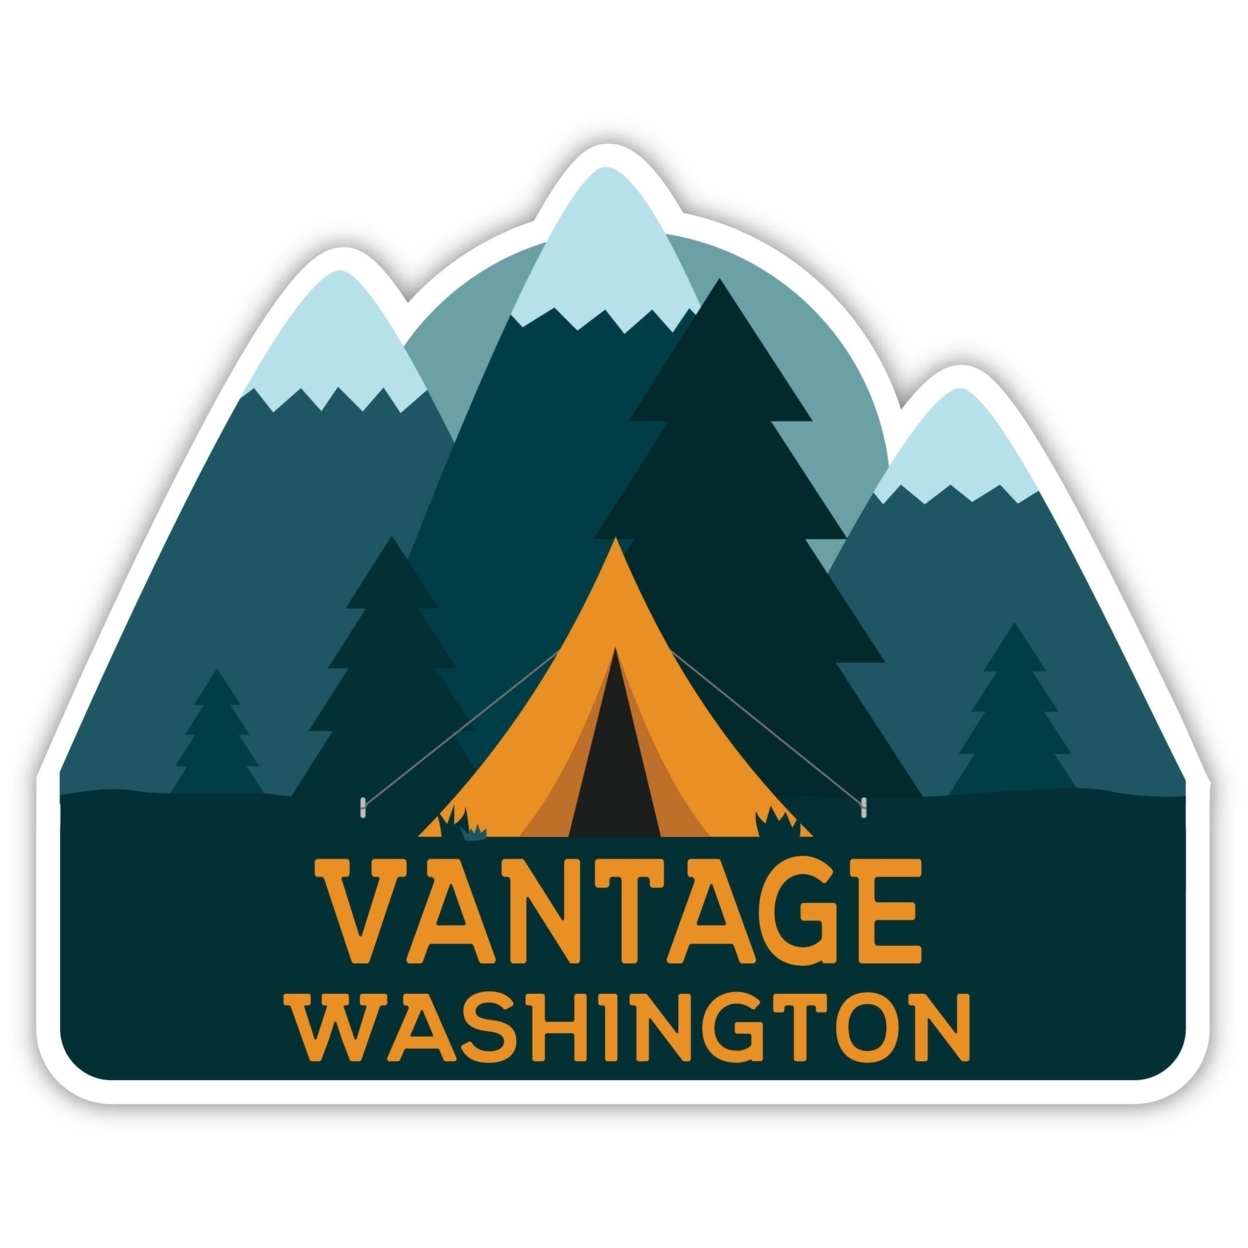 Vantage Washington Souvenir Decorative Stickers (Choose Theme And Size) - Single Unit, 2-Inch, Tent